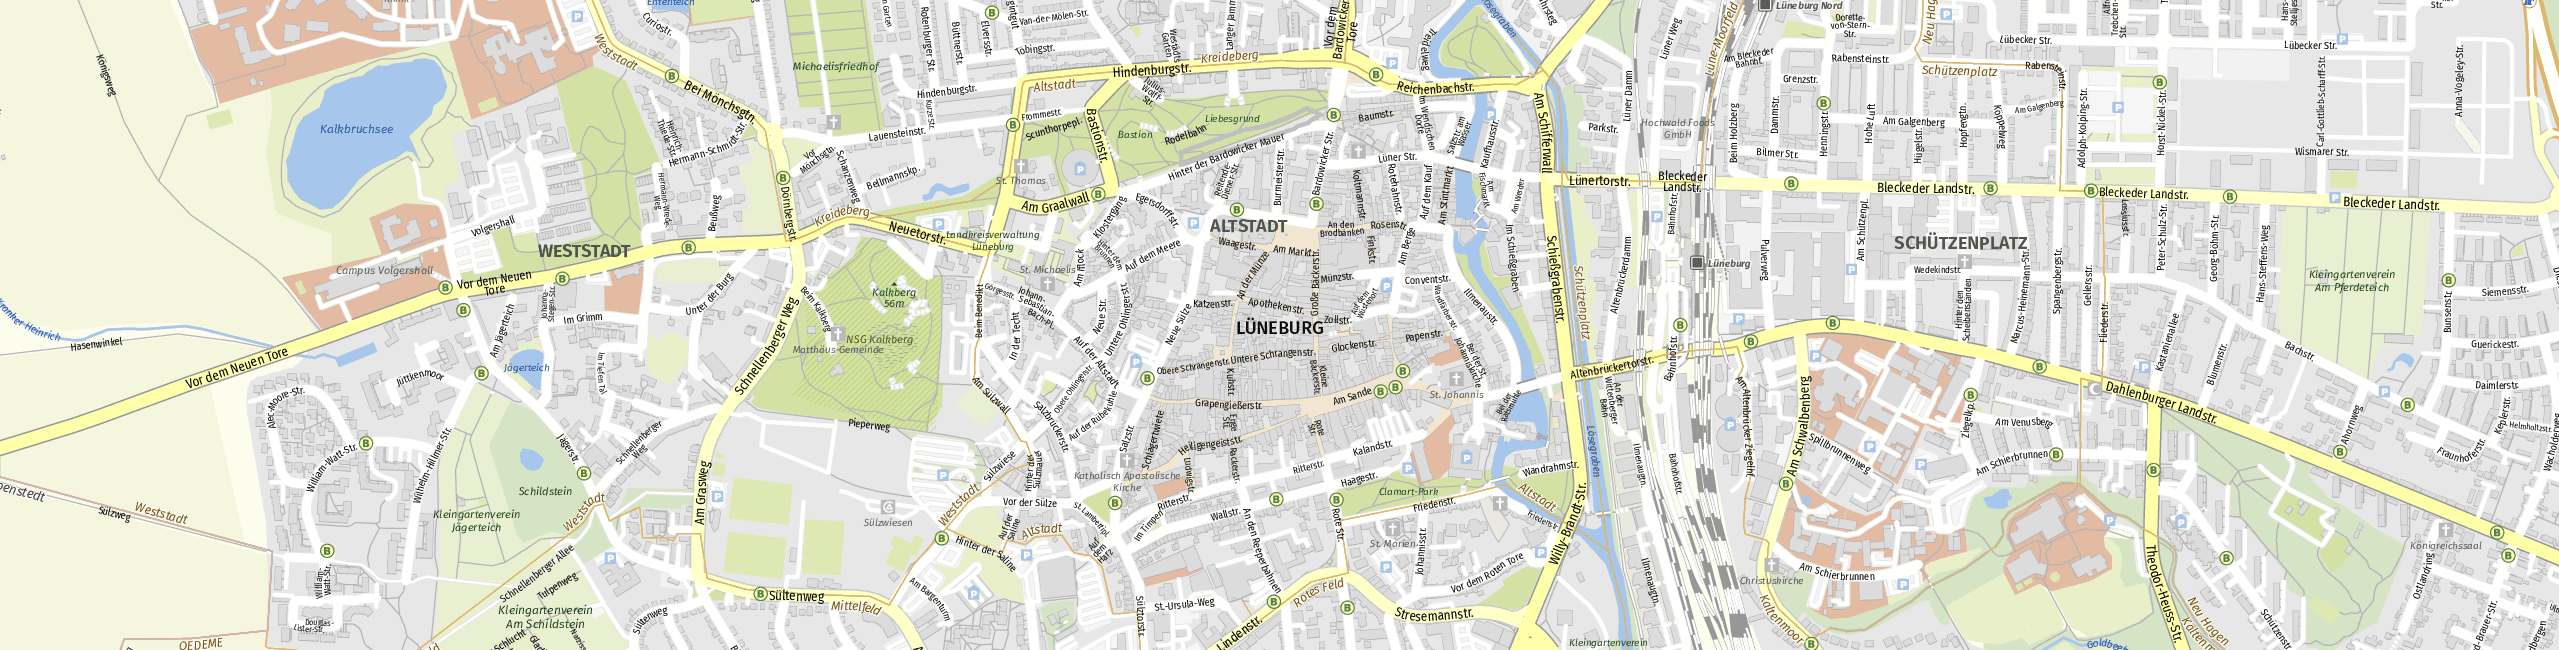 Stadtplan Lüneburg zum Downloaden.